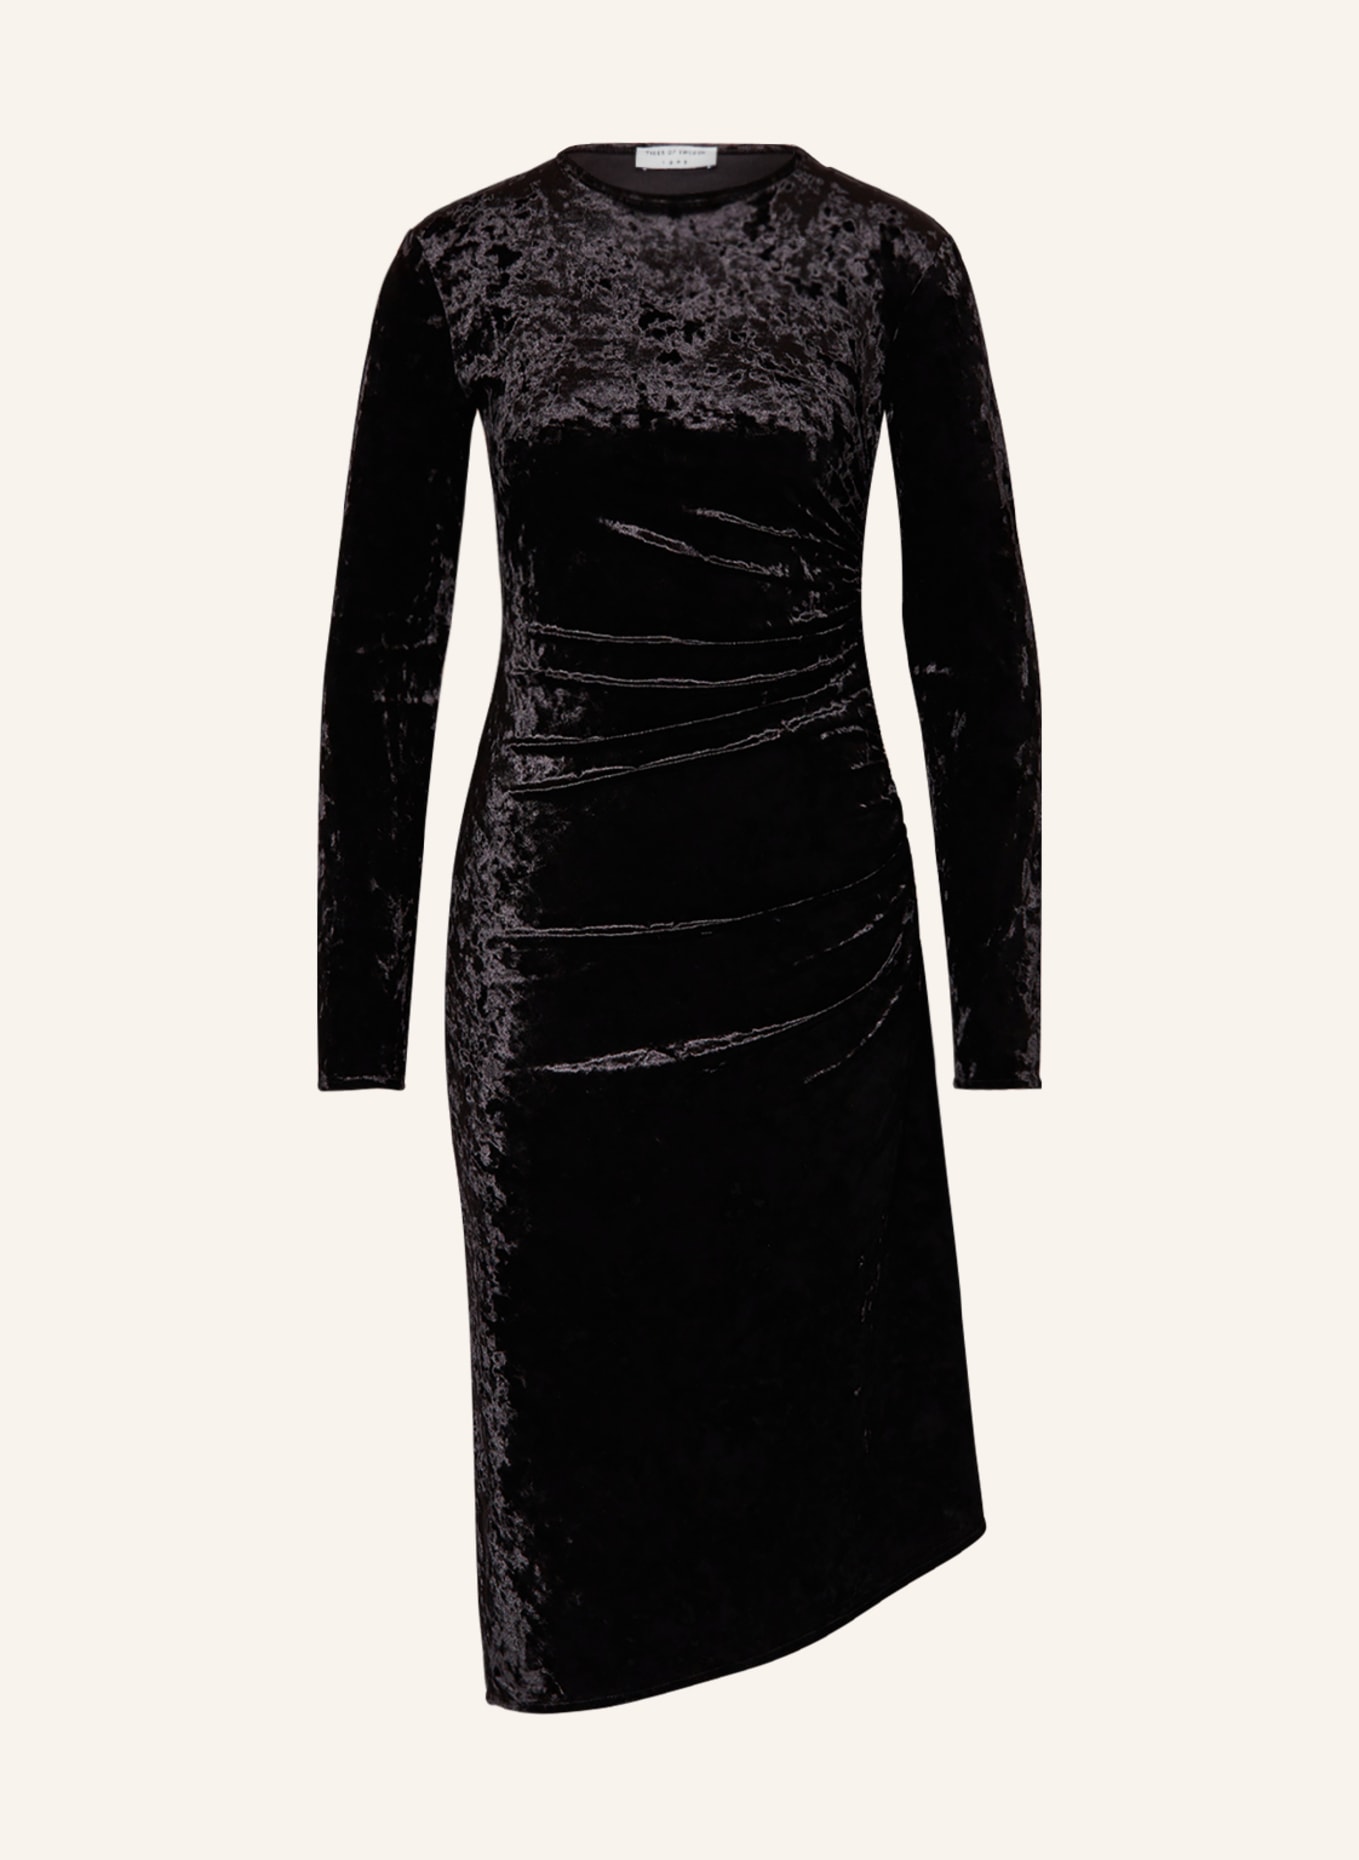 TIGER OF SWEDEN Sheath dress IVOA in velvet, Color: BLACK (Image 1)